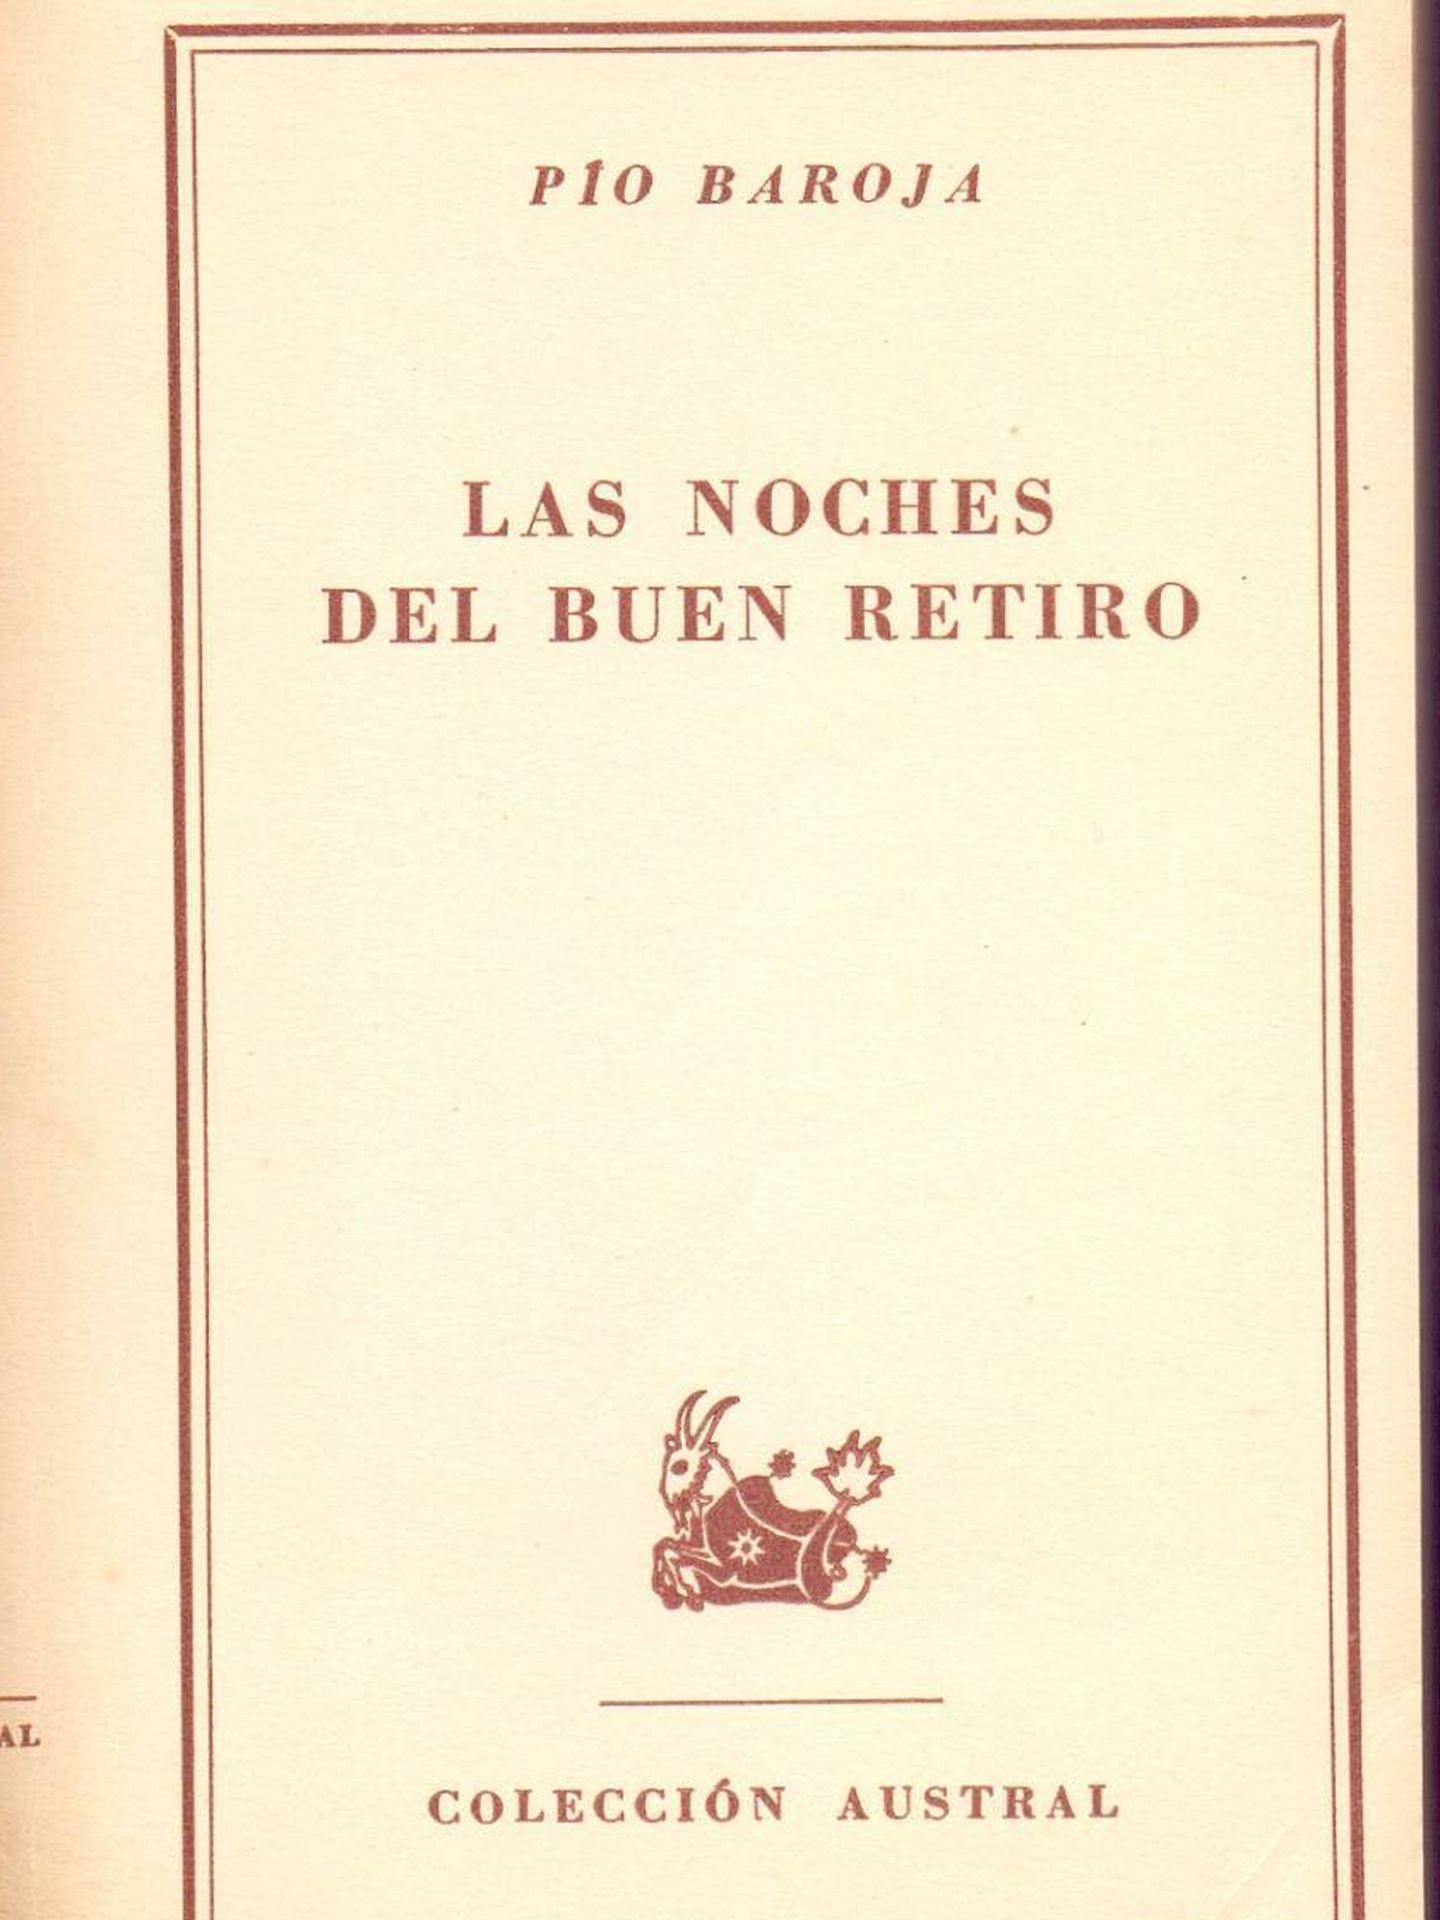 Portada de 'Las noches del Buen Retiro', de Pío Baroja, 1952. (Colecciones Austral)